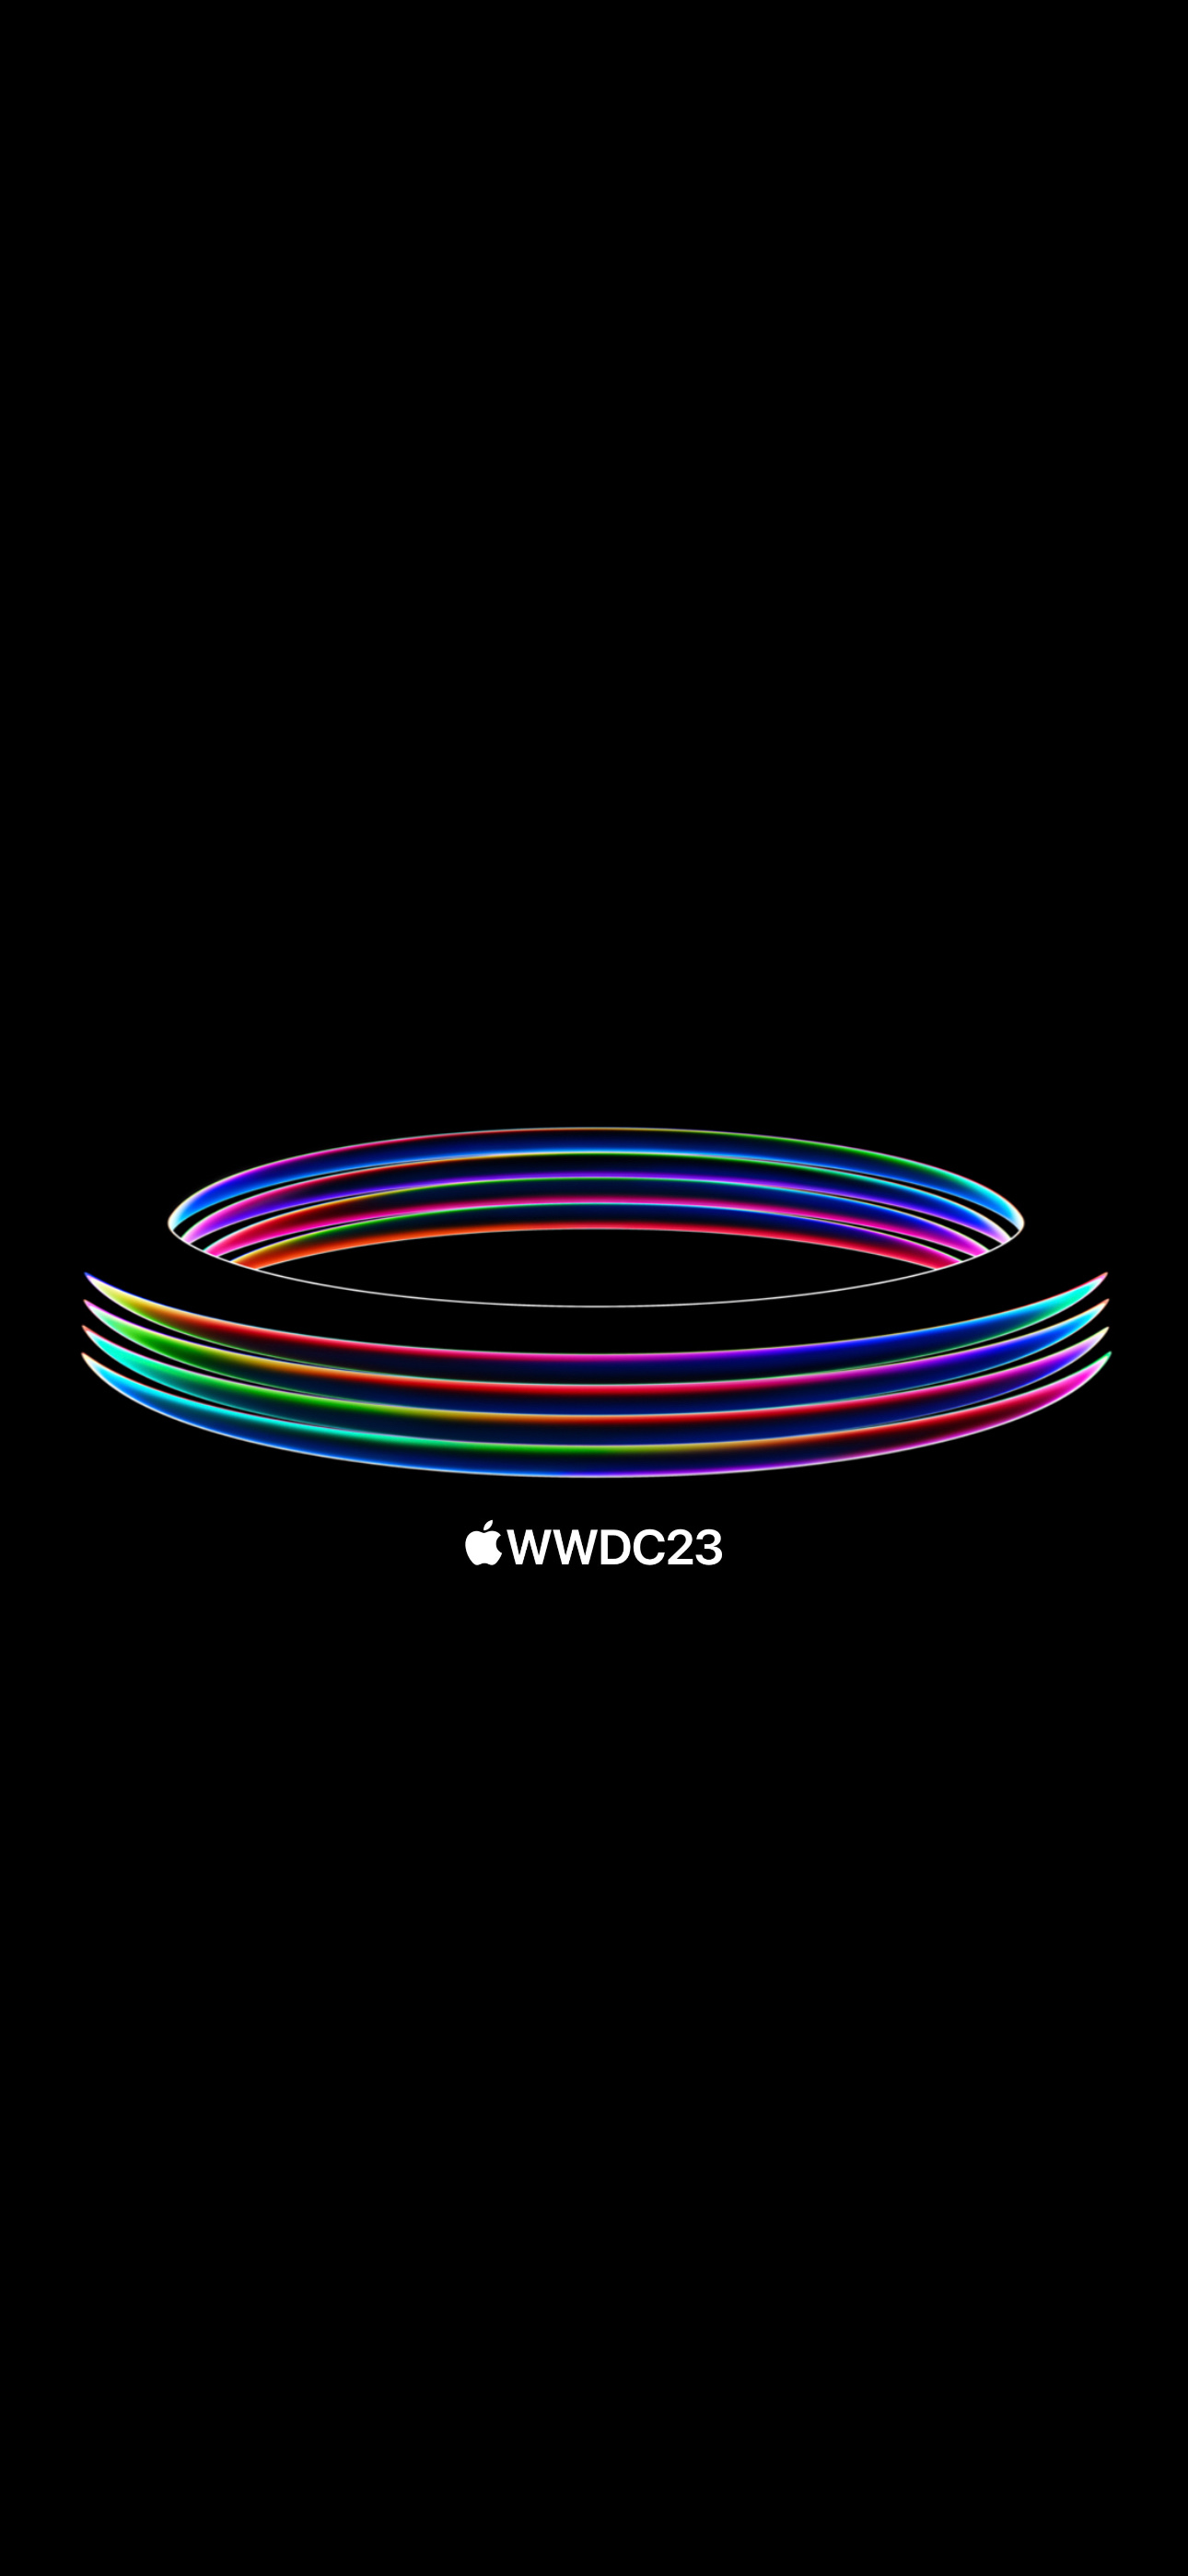 WWDC 2023 Wallpaper Apple Park